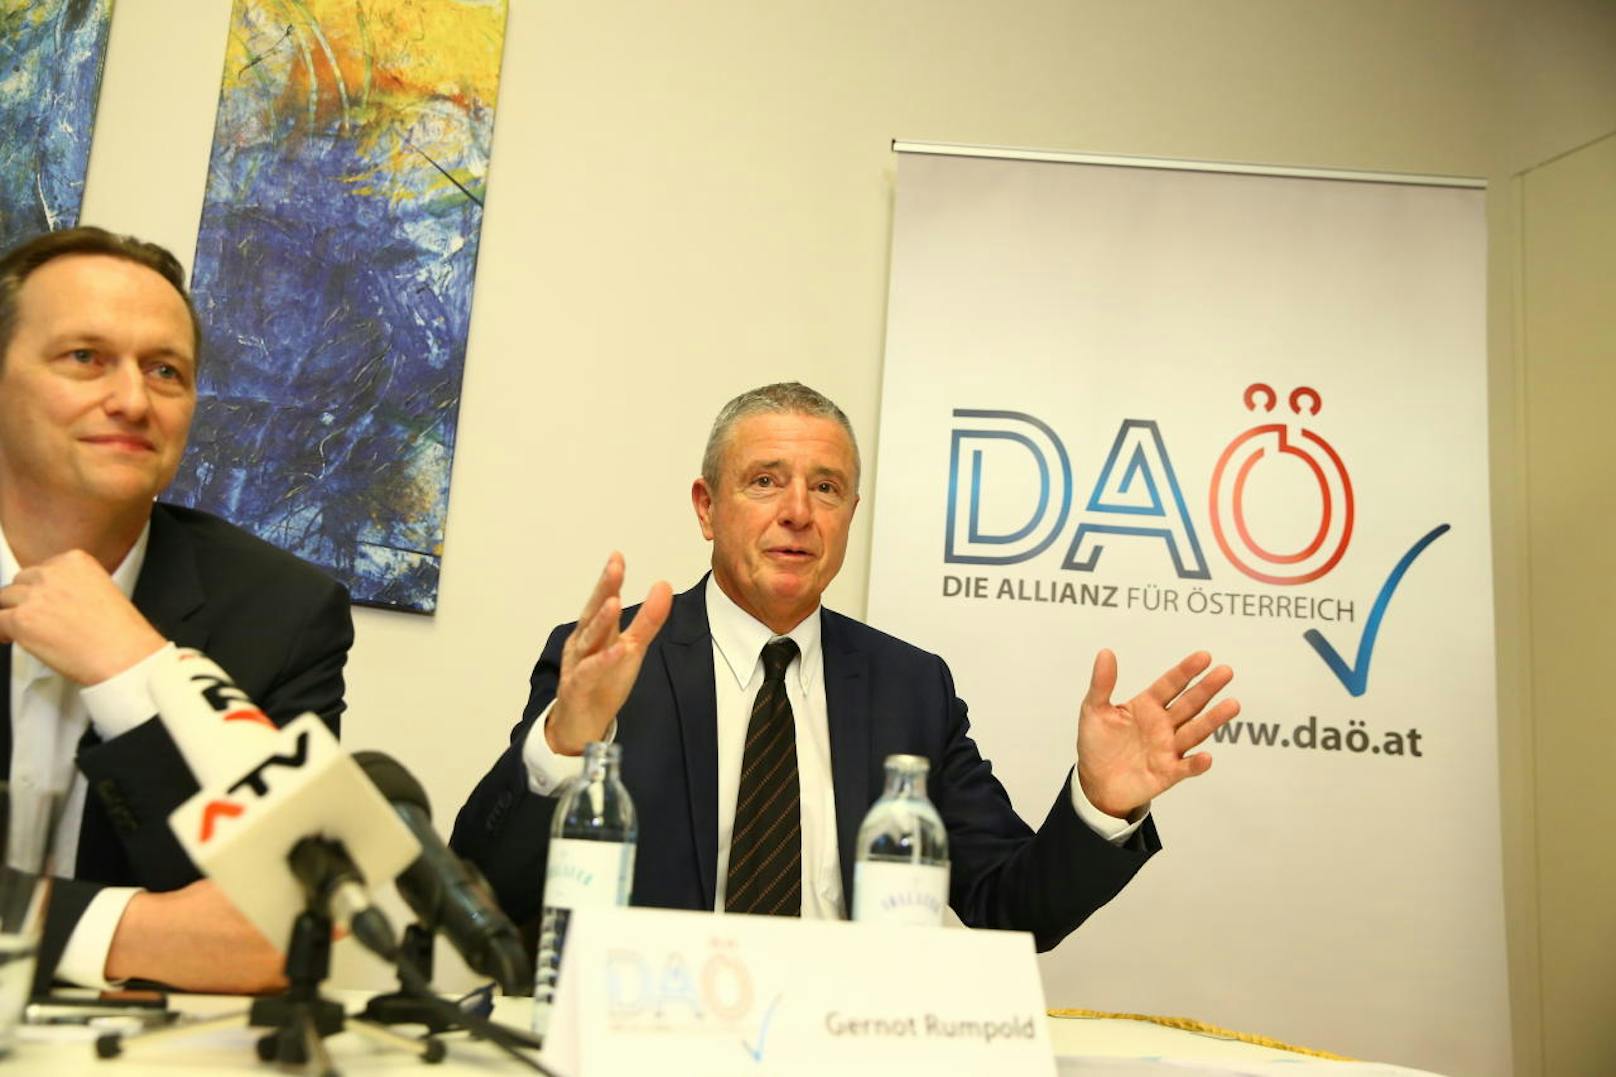 Die Bewegung will zur Gemeinderatswahl in Wien antreten. "Das Potential ist groß", ist Baron überzeugt.